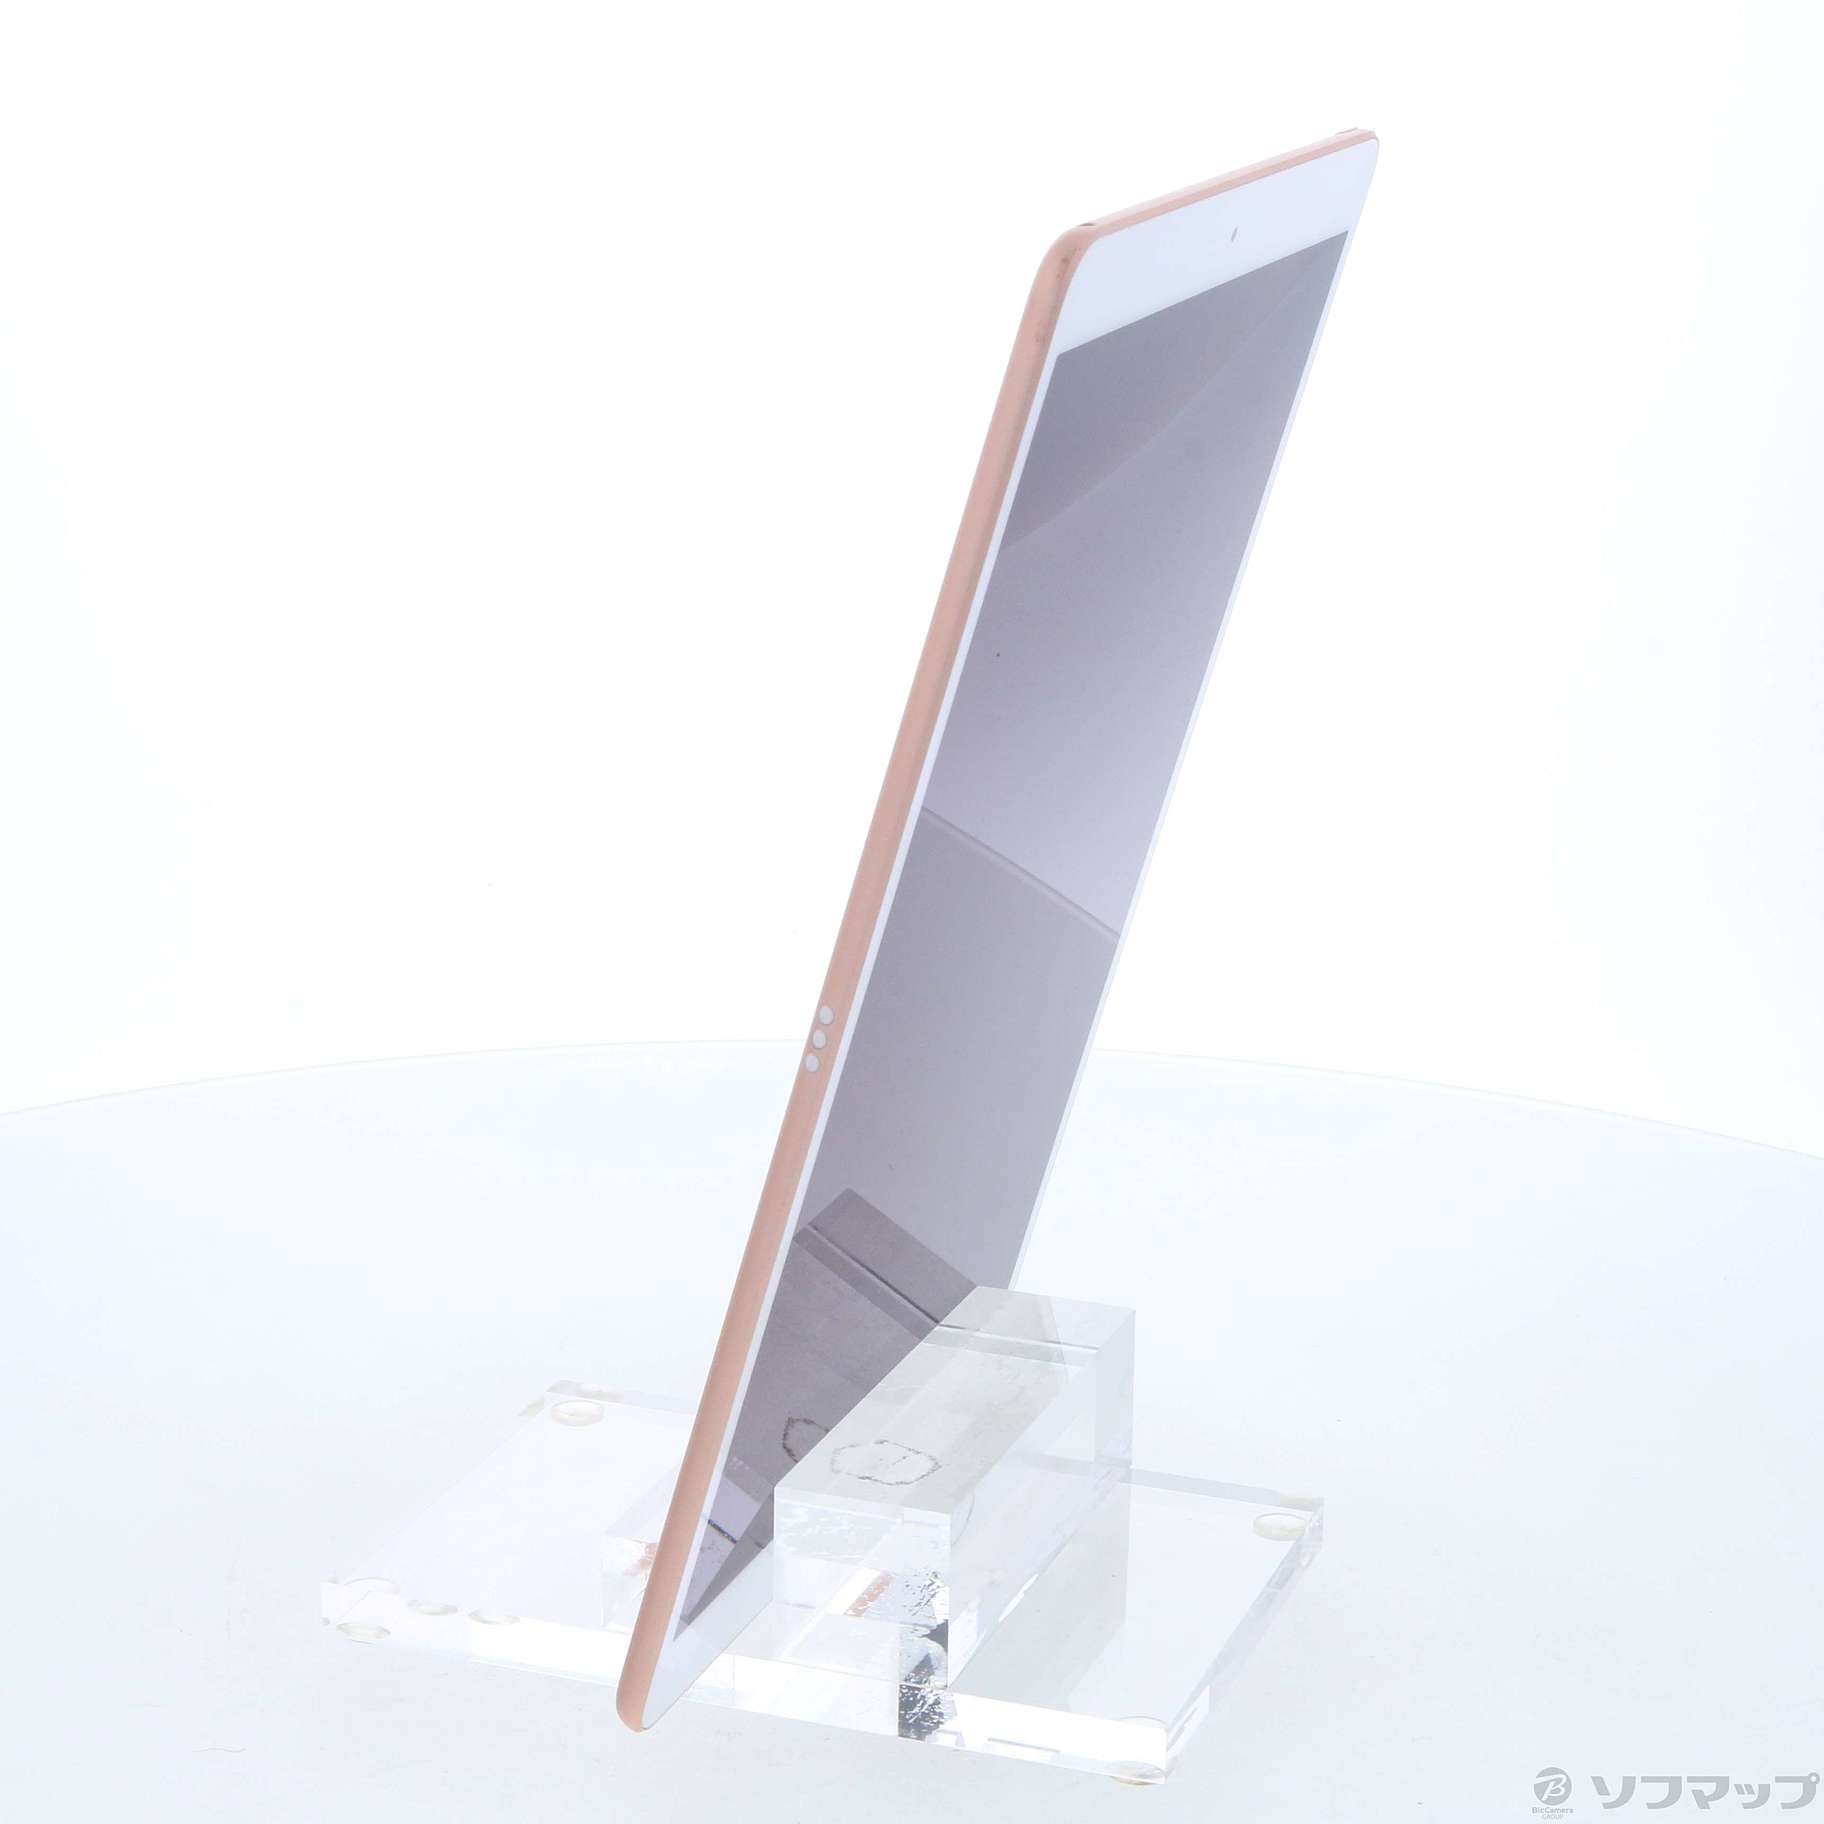 新品・未開封 MUUL2J/A Apple iPad Air 3 gold